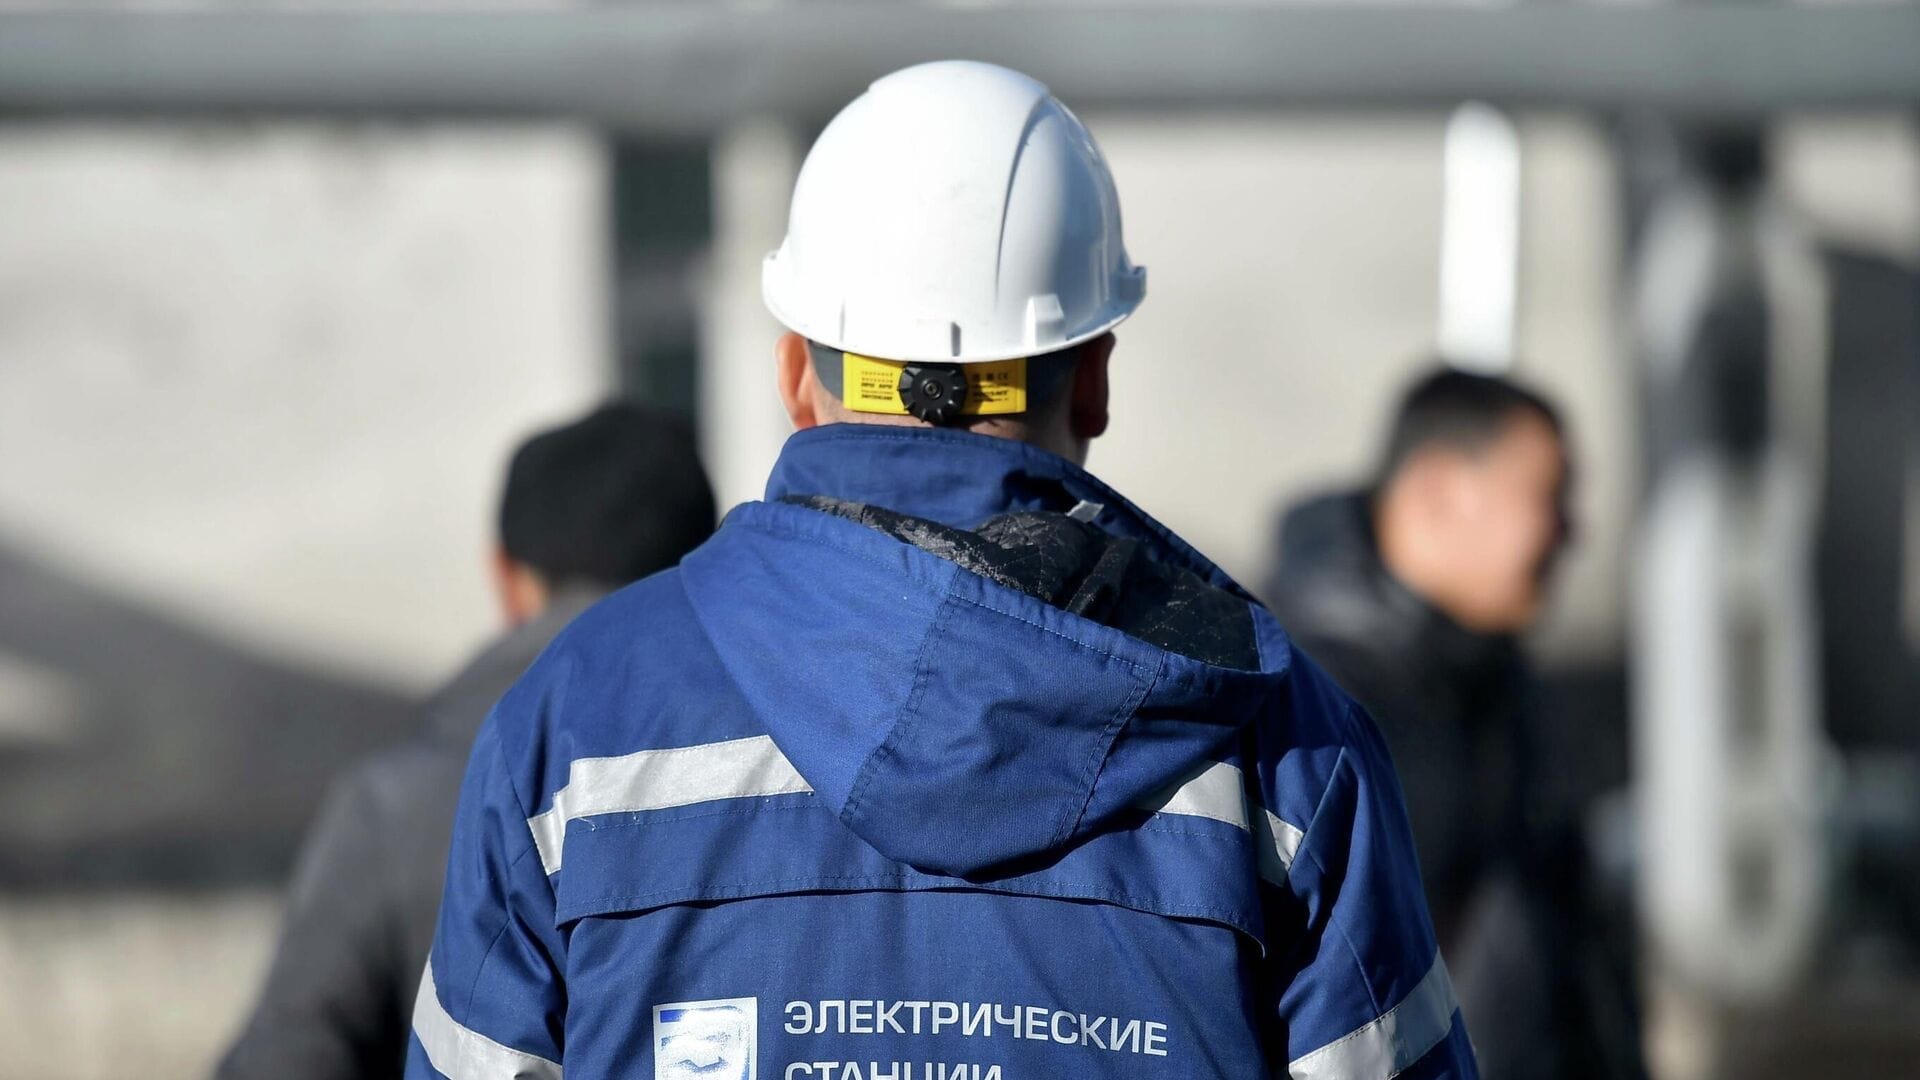 ОАО «Электрические станции» ликвидировало два филиала —  ТЭЦ Бишкека и «Бишкектеплосеть»